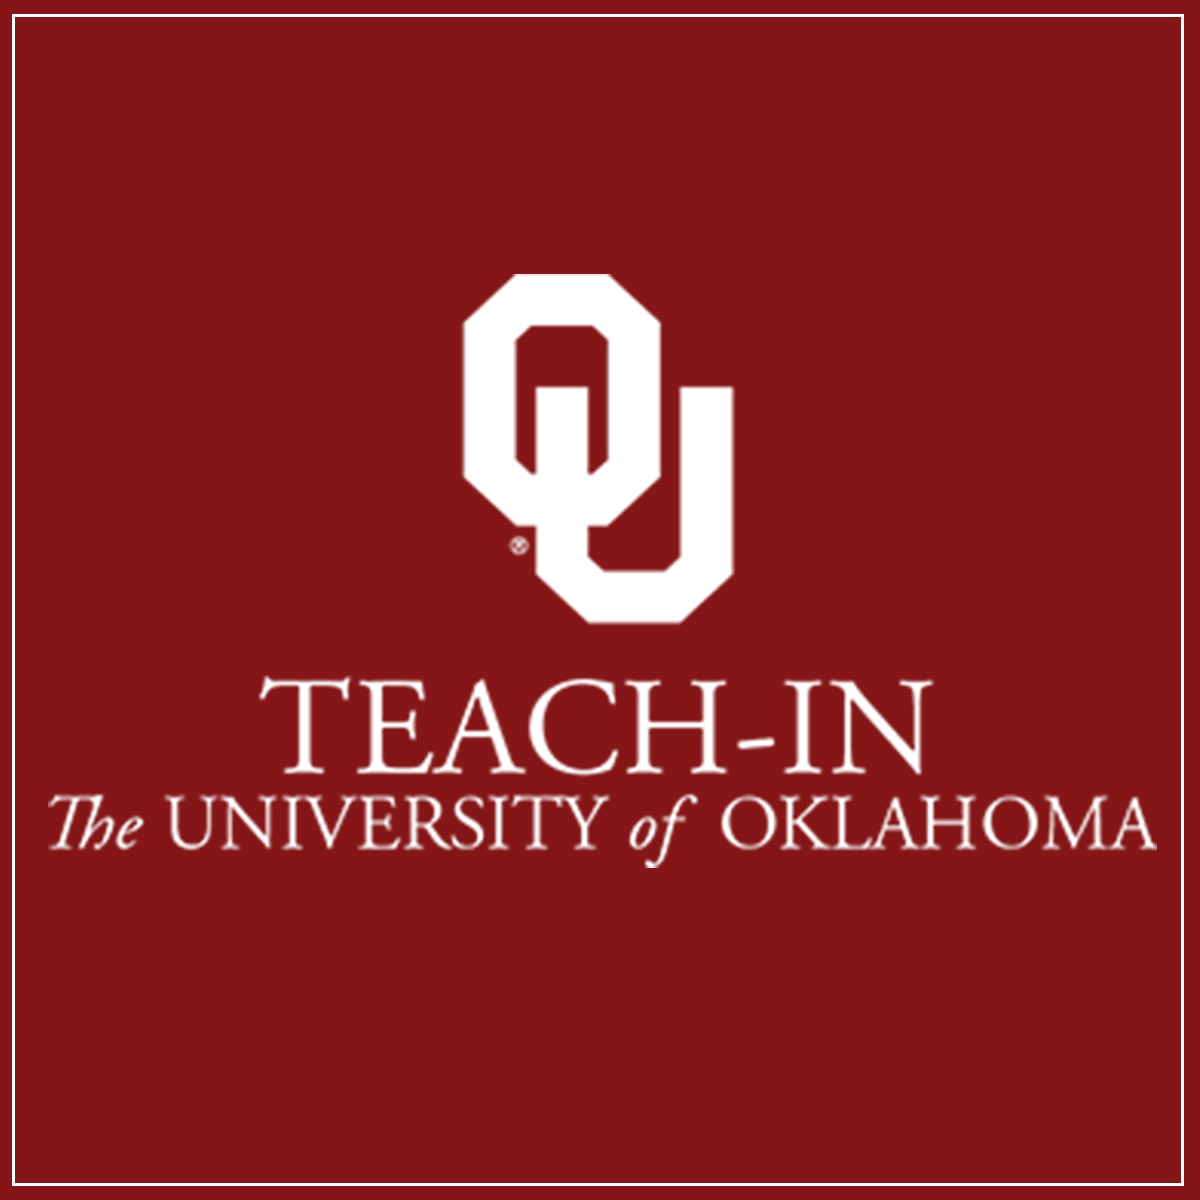 OU Teach-in logo